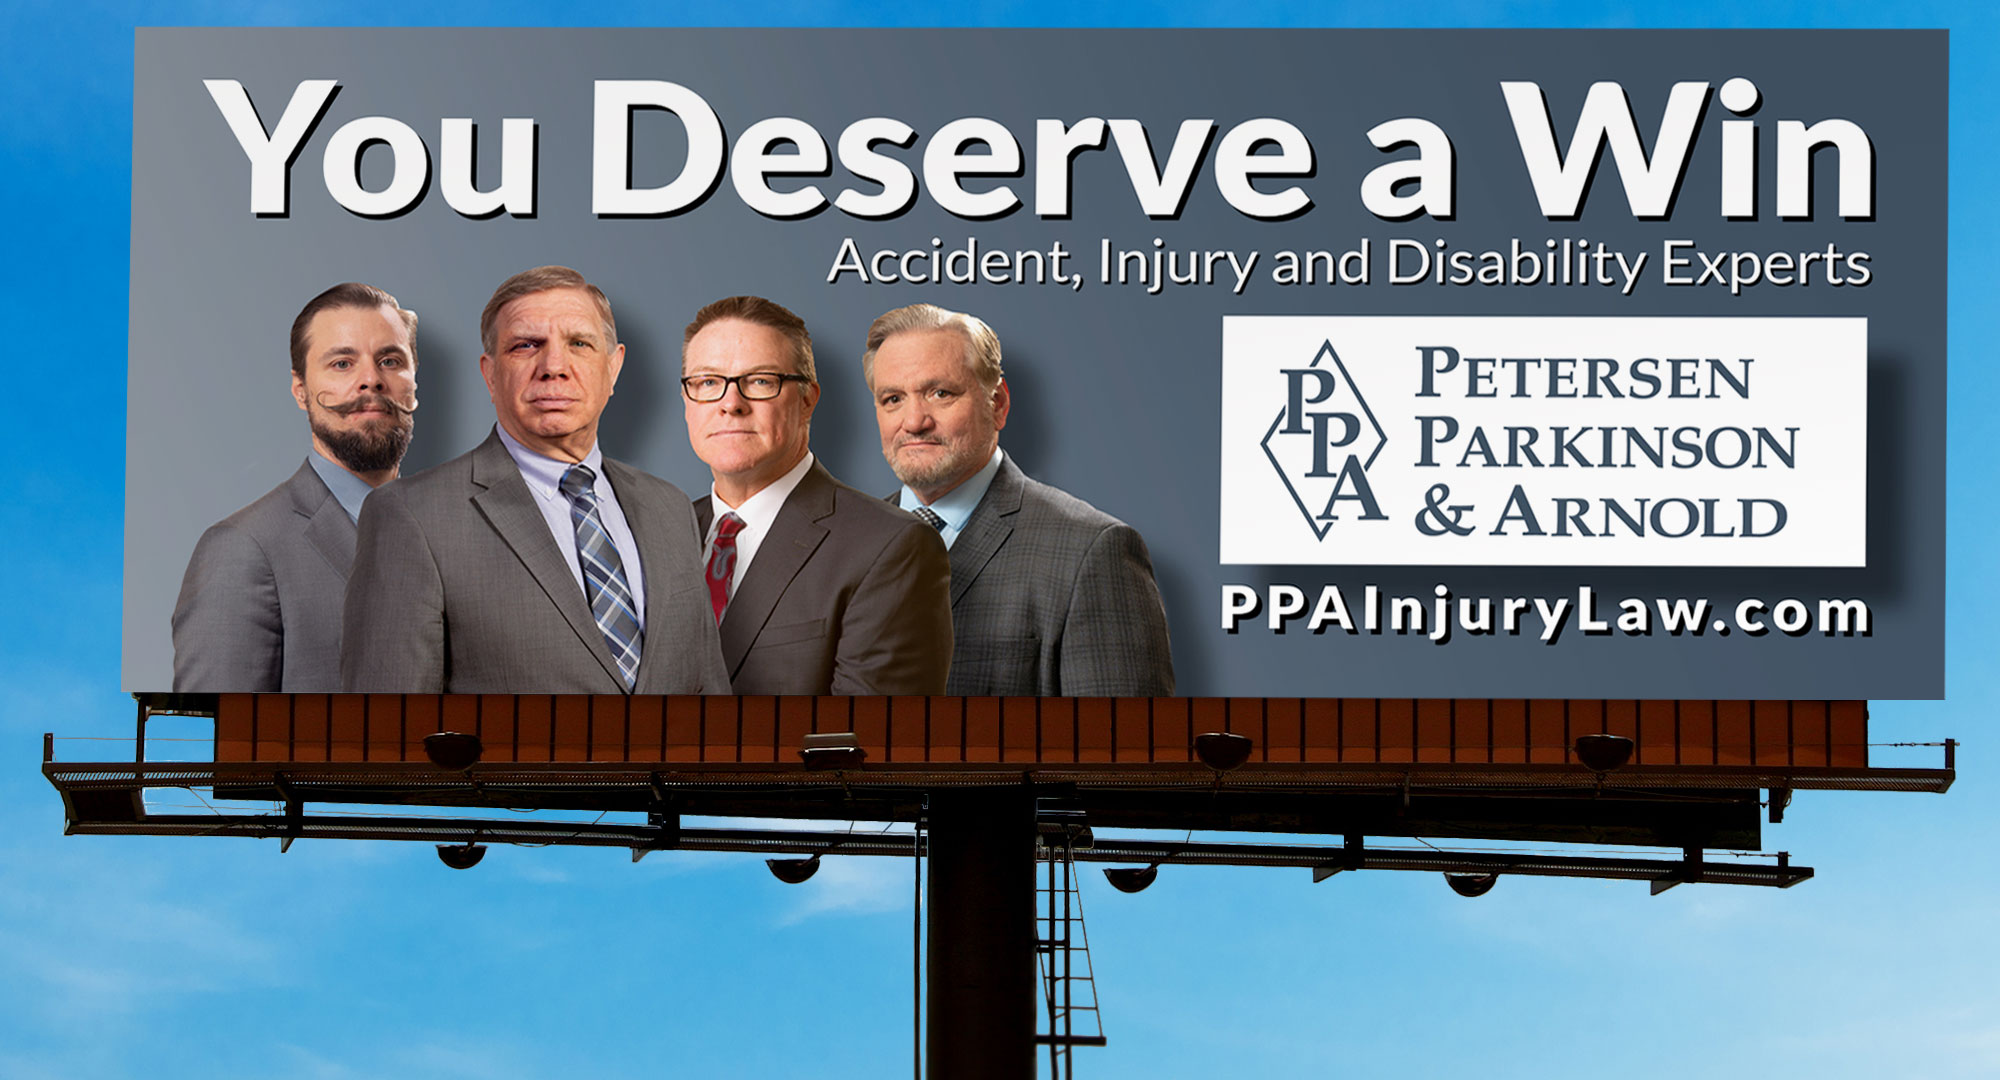 PPA-billboard